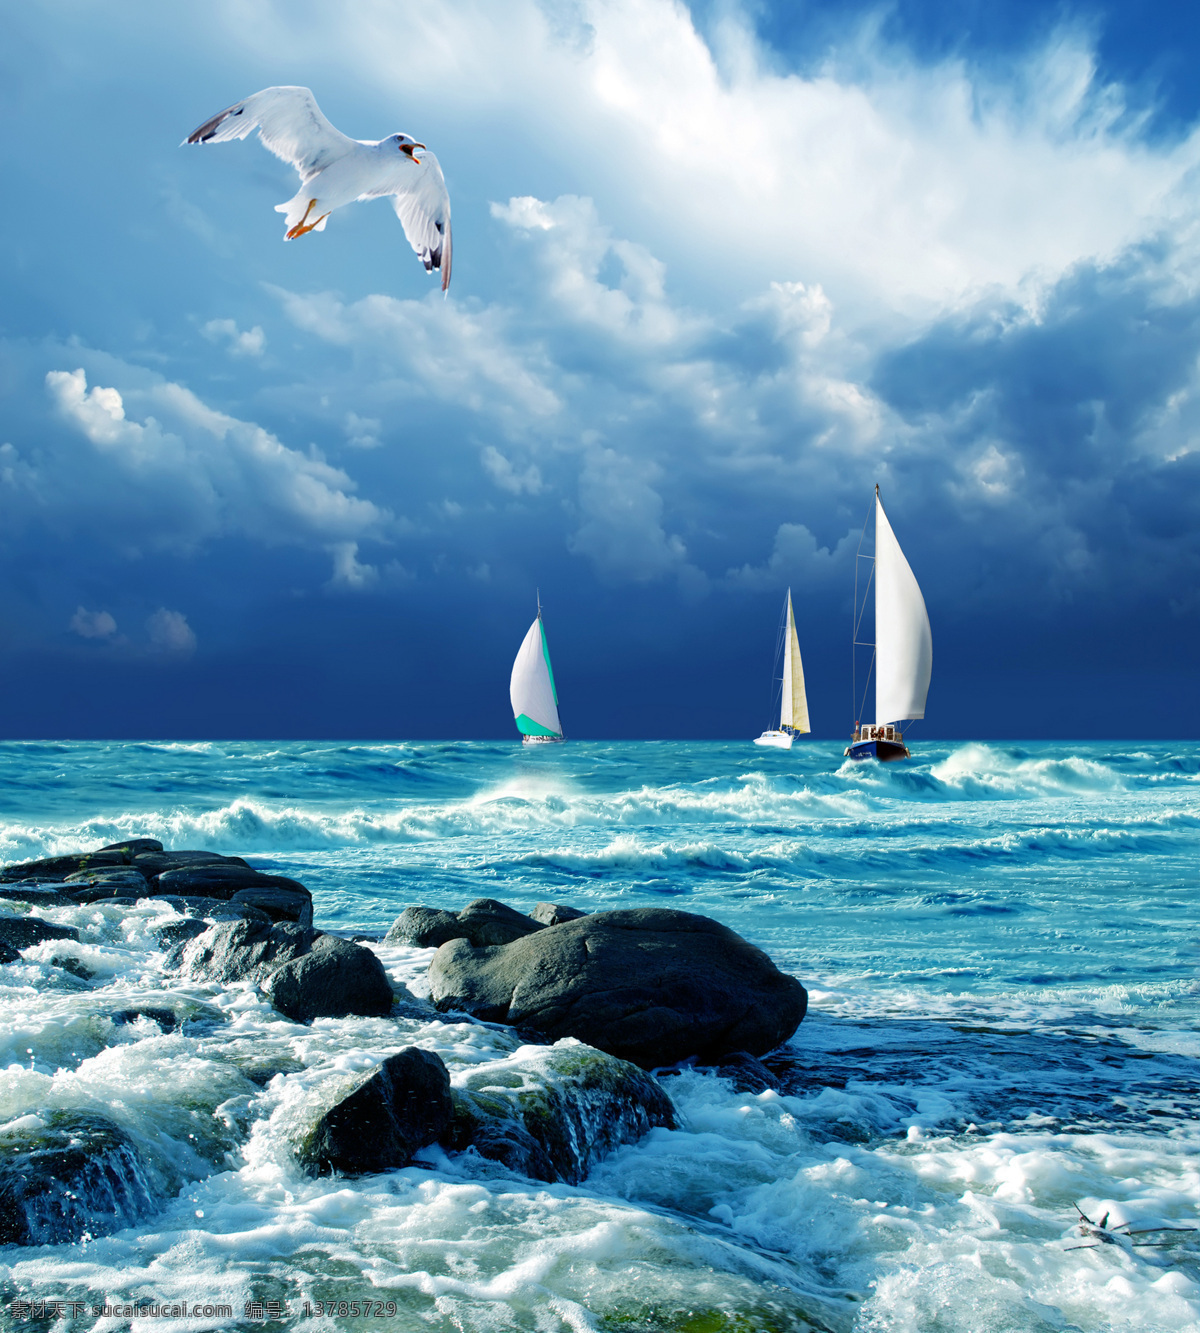 乘风破浪 帆船 远航 大海 蓝天 白云 海鸥 大海风光 礁石 海边 海岸 海边风光 自然风景 自然景观